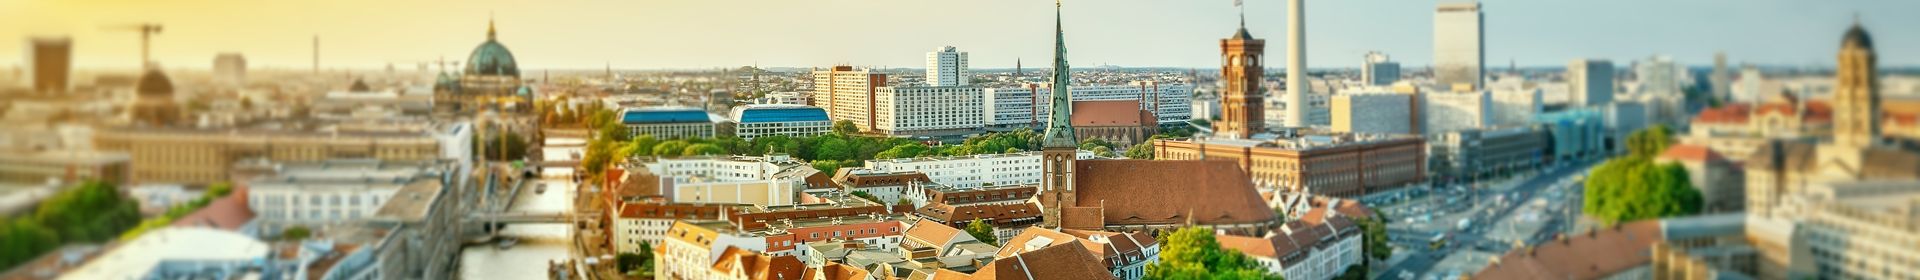 Immobilien-Sachverständiger in Berlin, Potsdam & Brandenburg